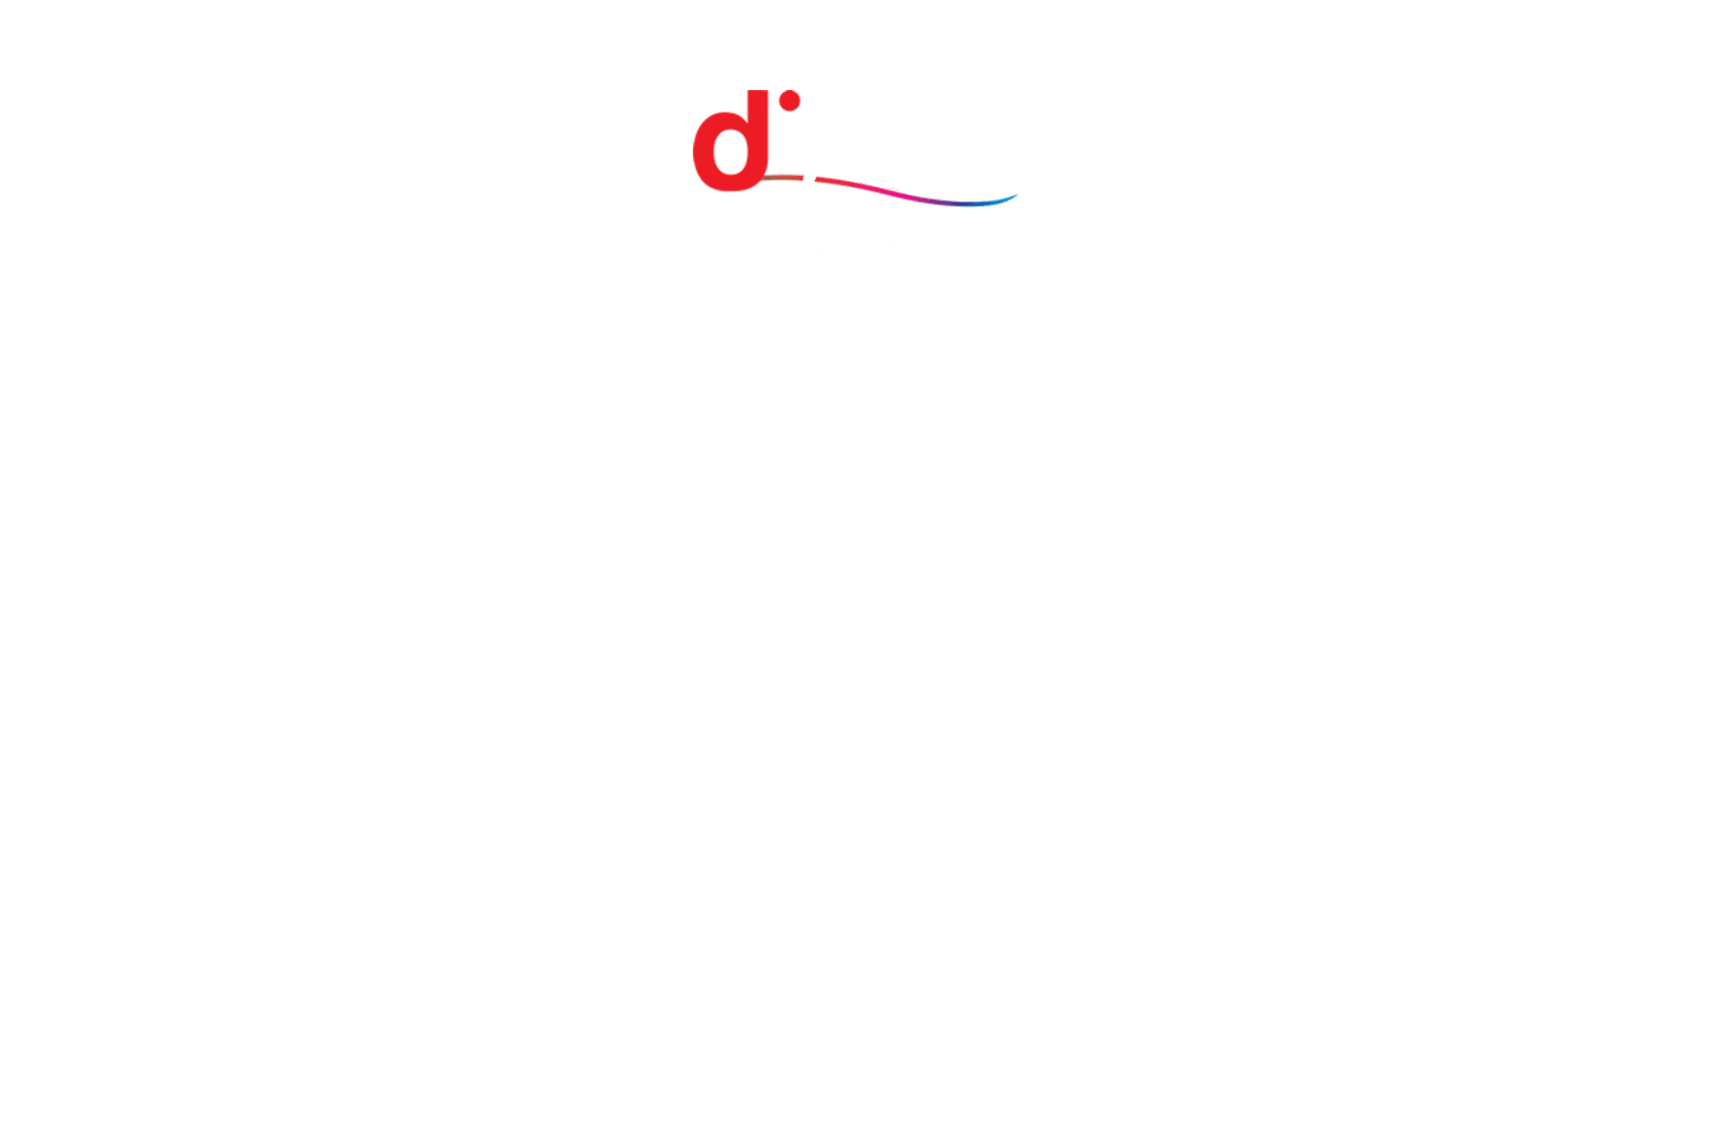 dFlow - Beléptetőkapu a Digicontól